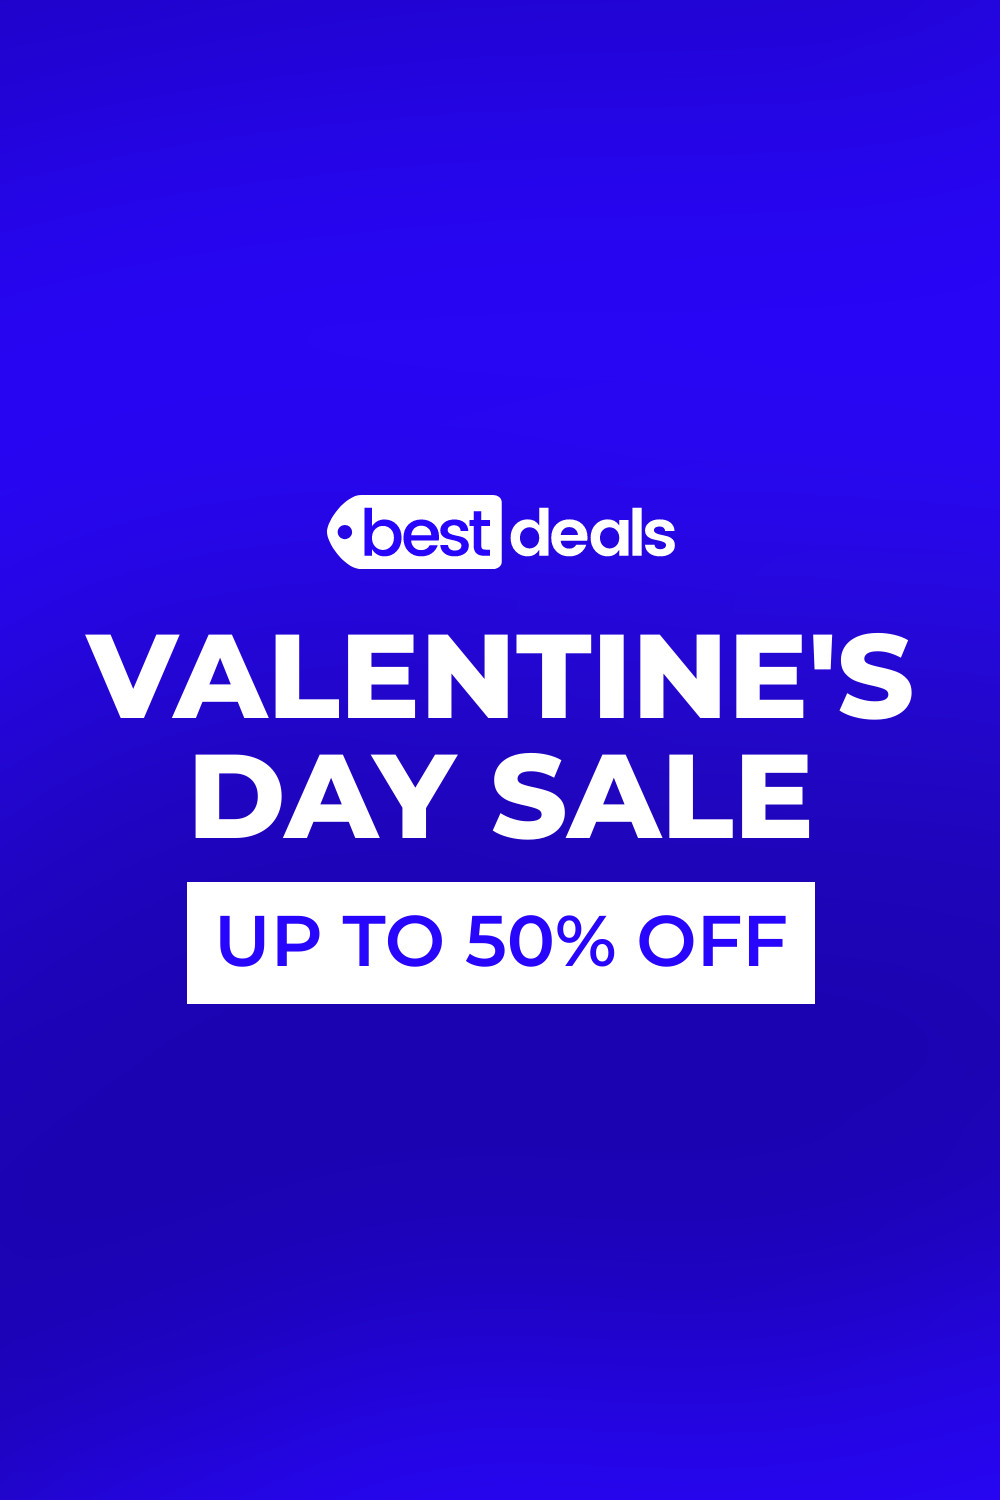 Valentine's Day Sale Best Deals